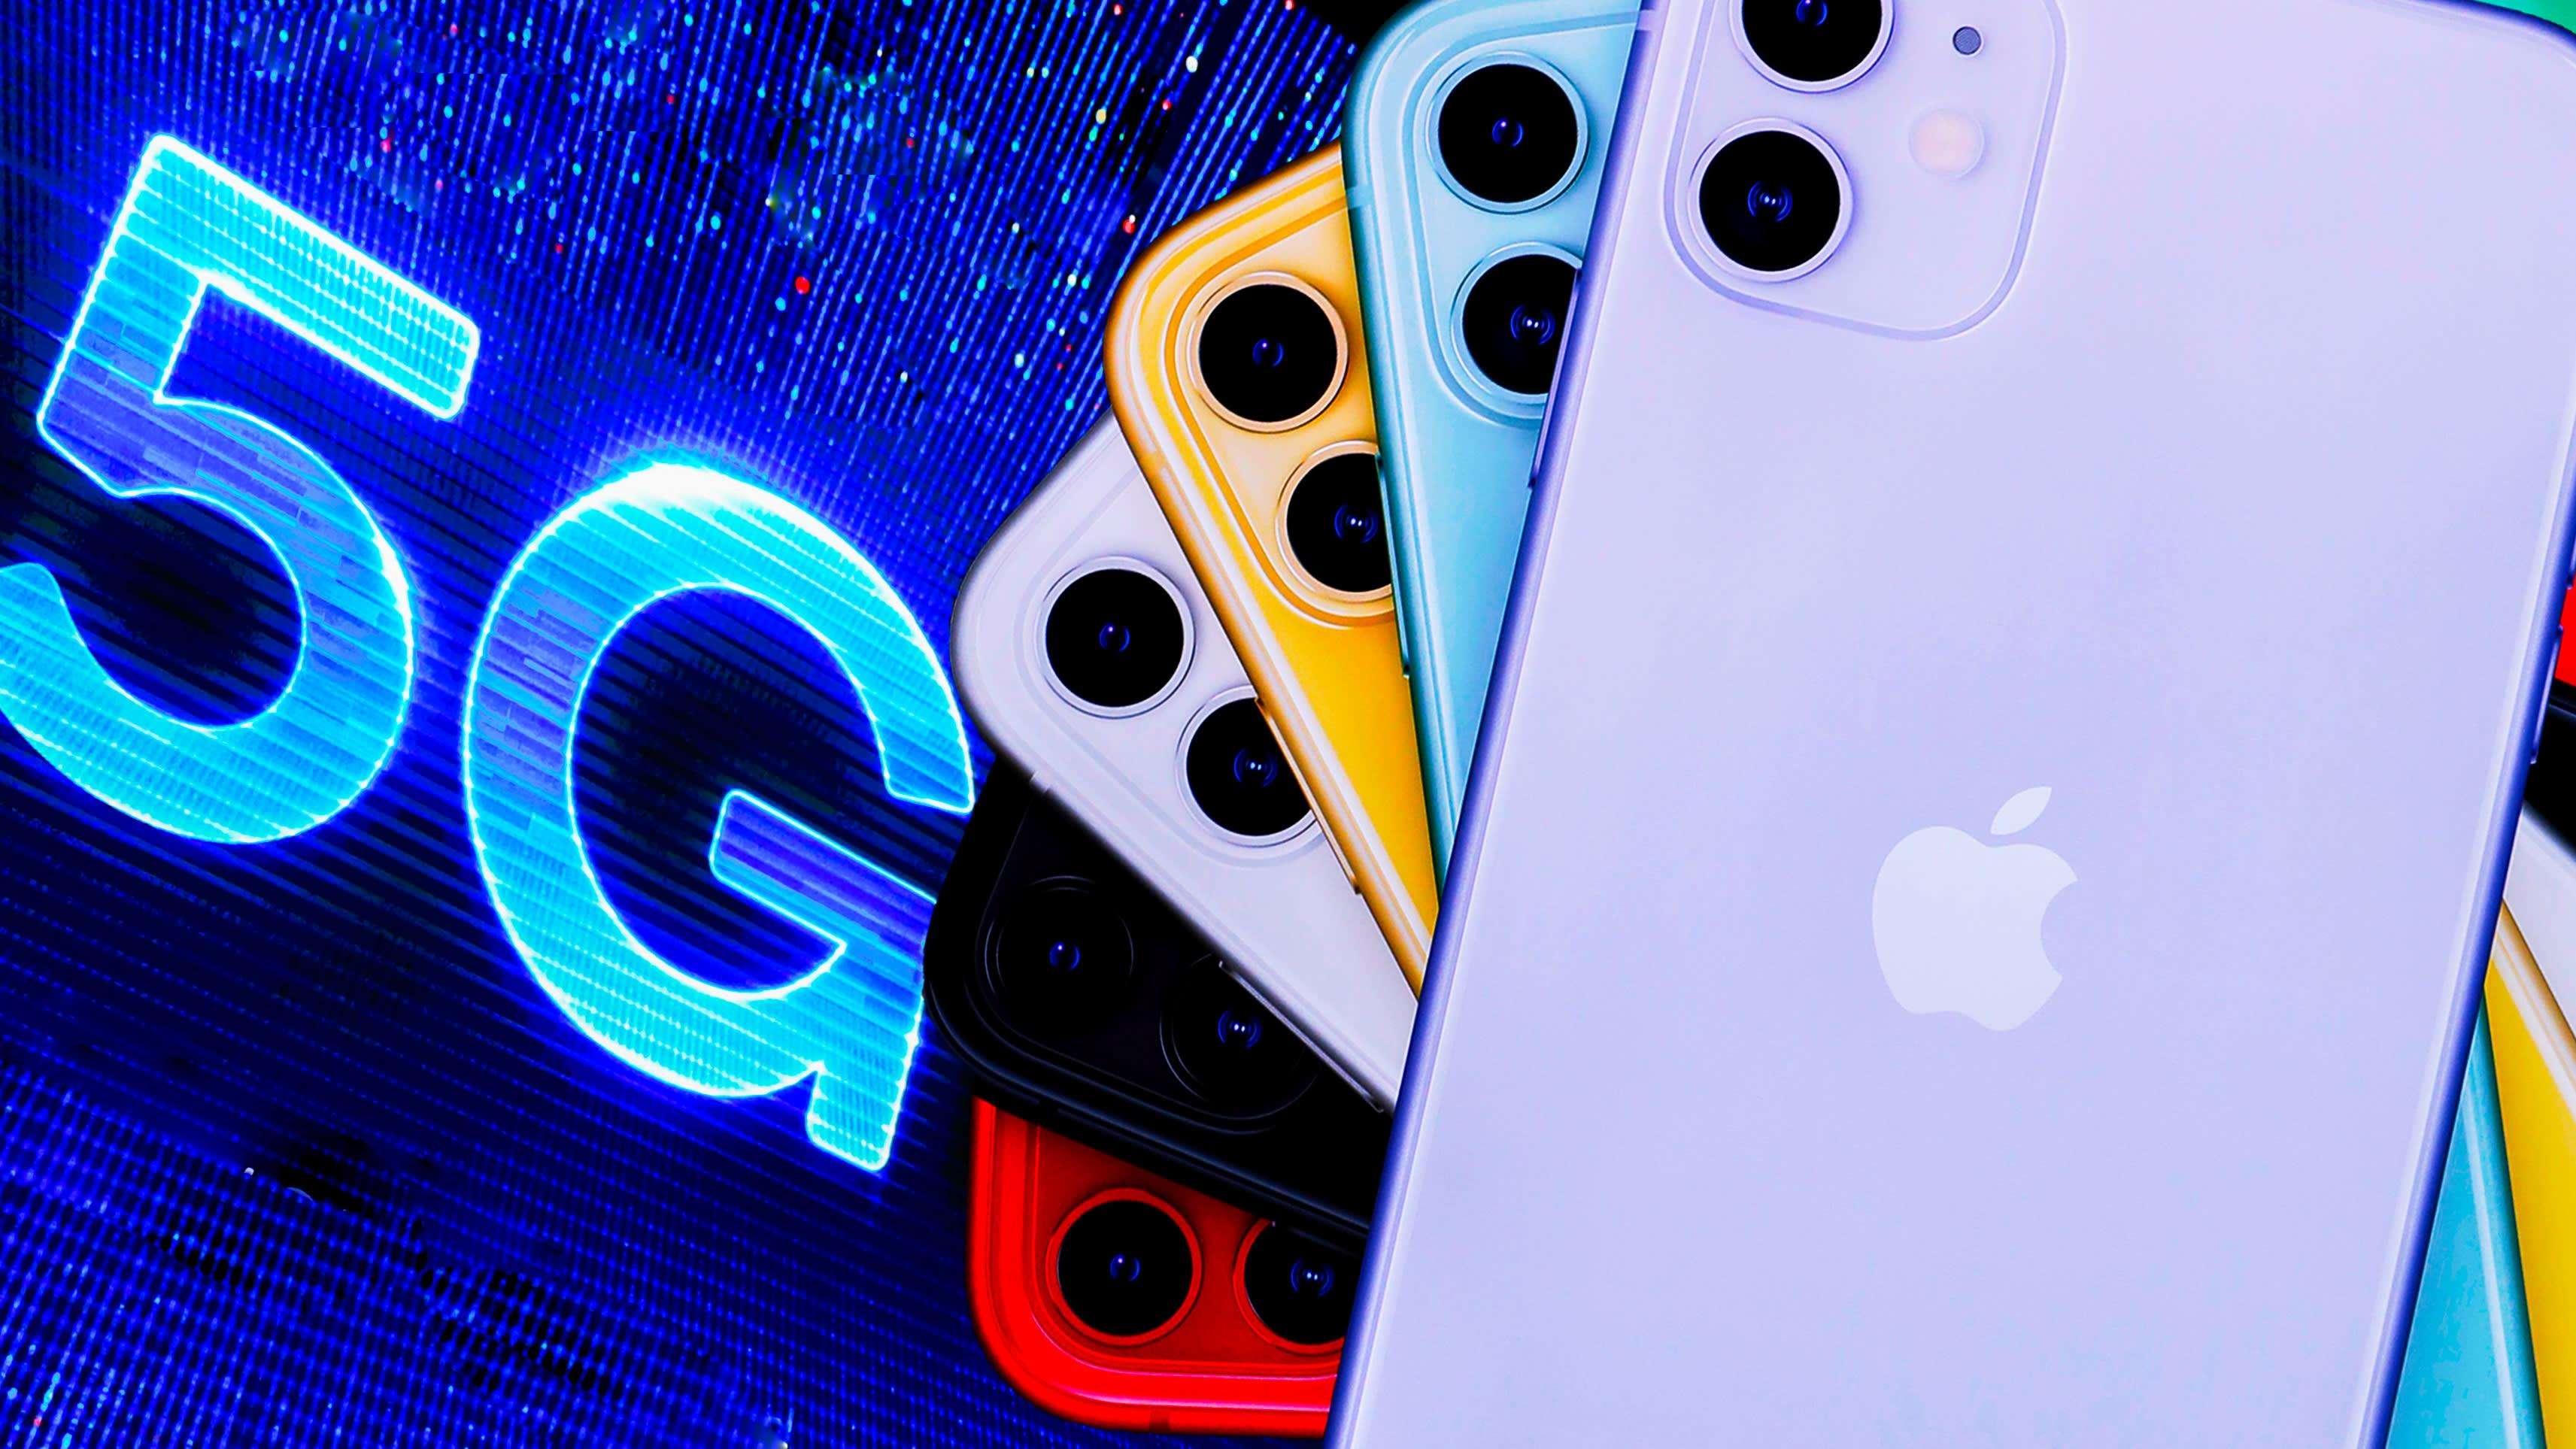 2020 में एप्प्ल लॉन्च करेगा 5G सपोर्ट वाले iPhone